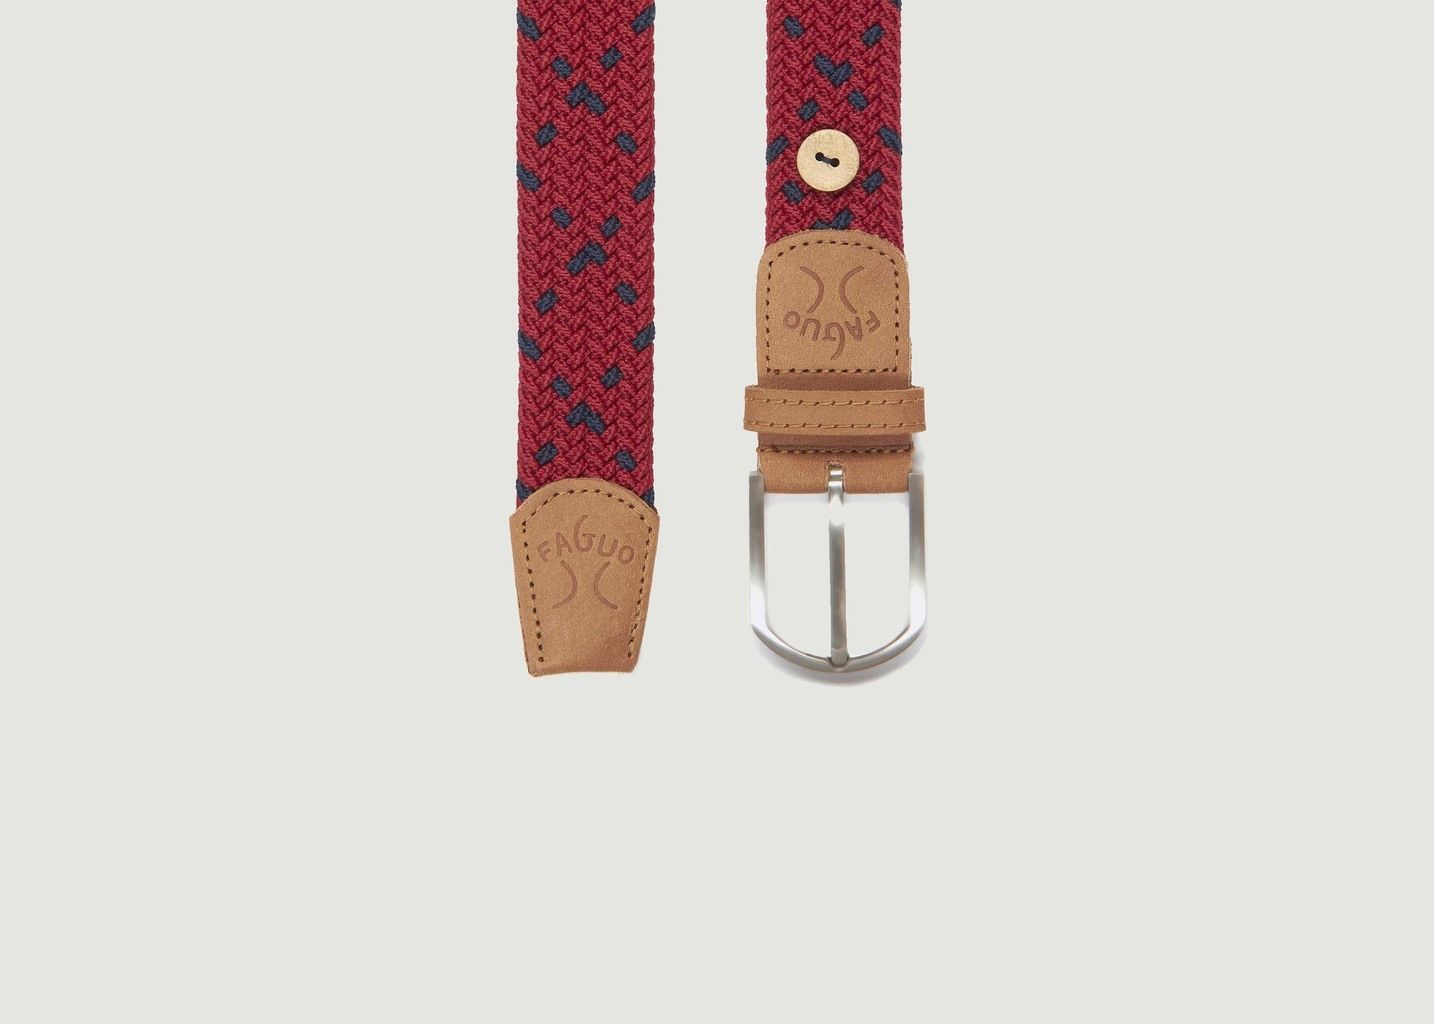 Woven Belt Faguo: Dây nịt Woven Belt Faguo được làm từ chất liệu vải dệt, mang đến vẻ đẹp tinh tế và sang trọng cho người sử dụng. Với nhiều màu sắc và kiểu dáng khác nhau, bạn có thể dễ dàng lựa chọn sản phẩm phù hợp với phong cách của mình.